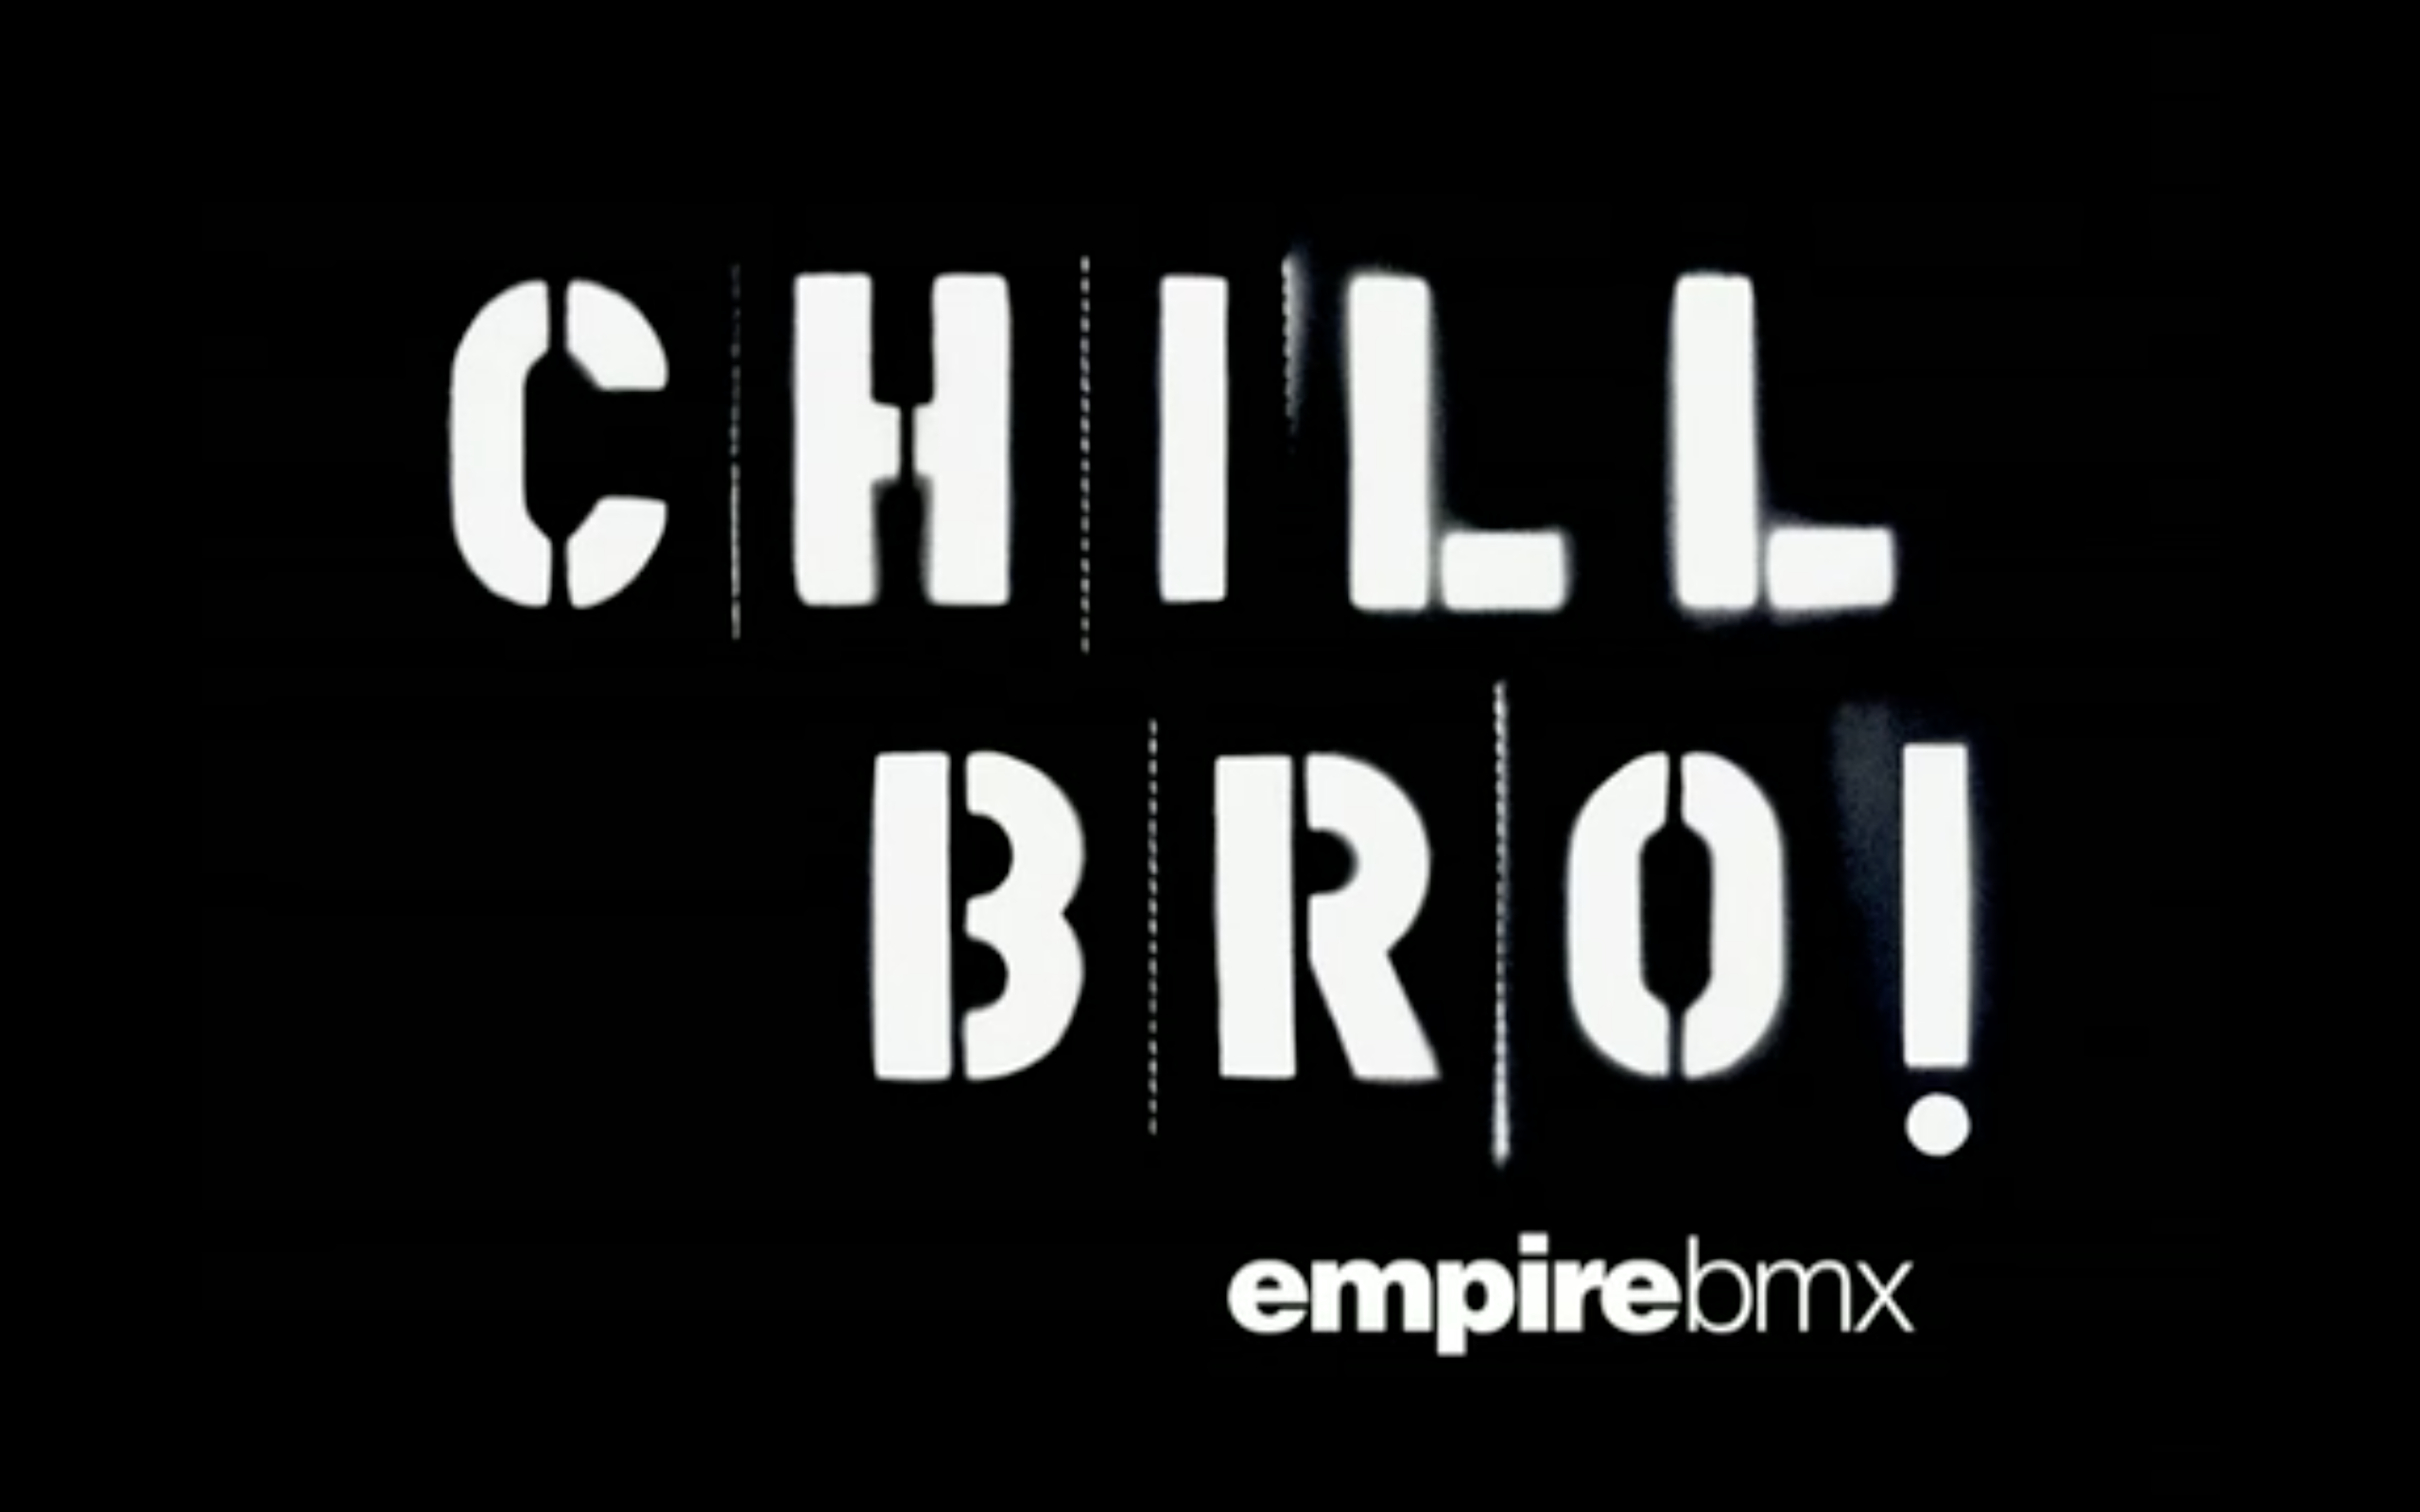 VIDEO VAULT: Empire BMX Bro!